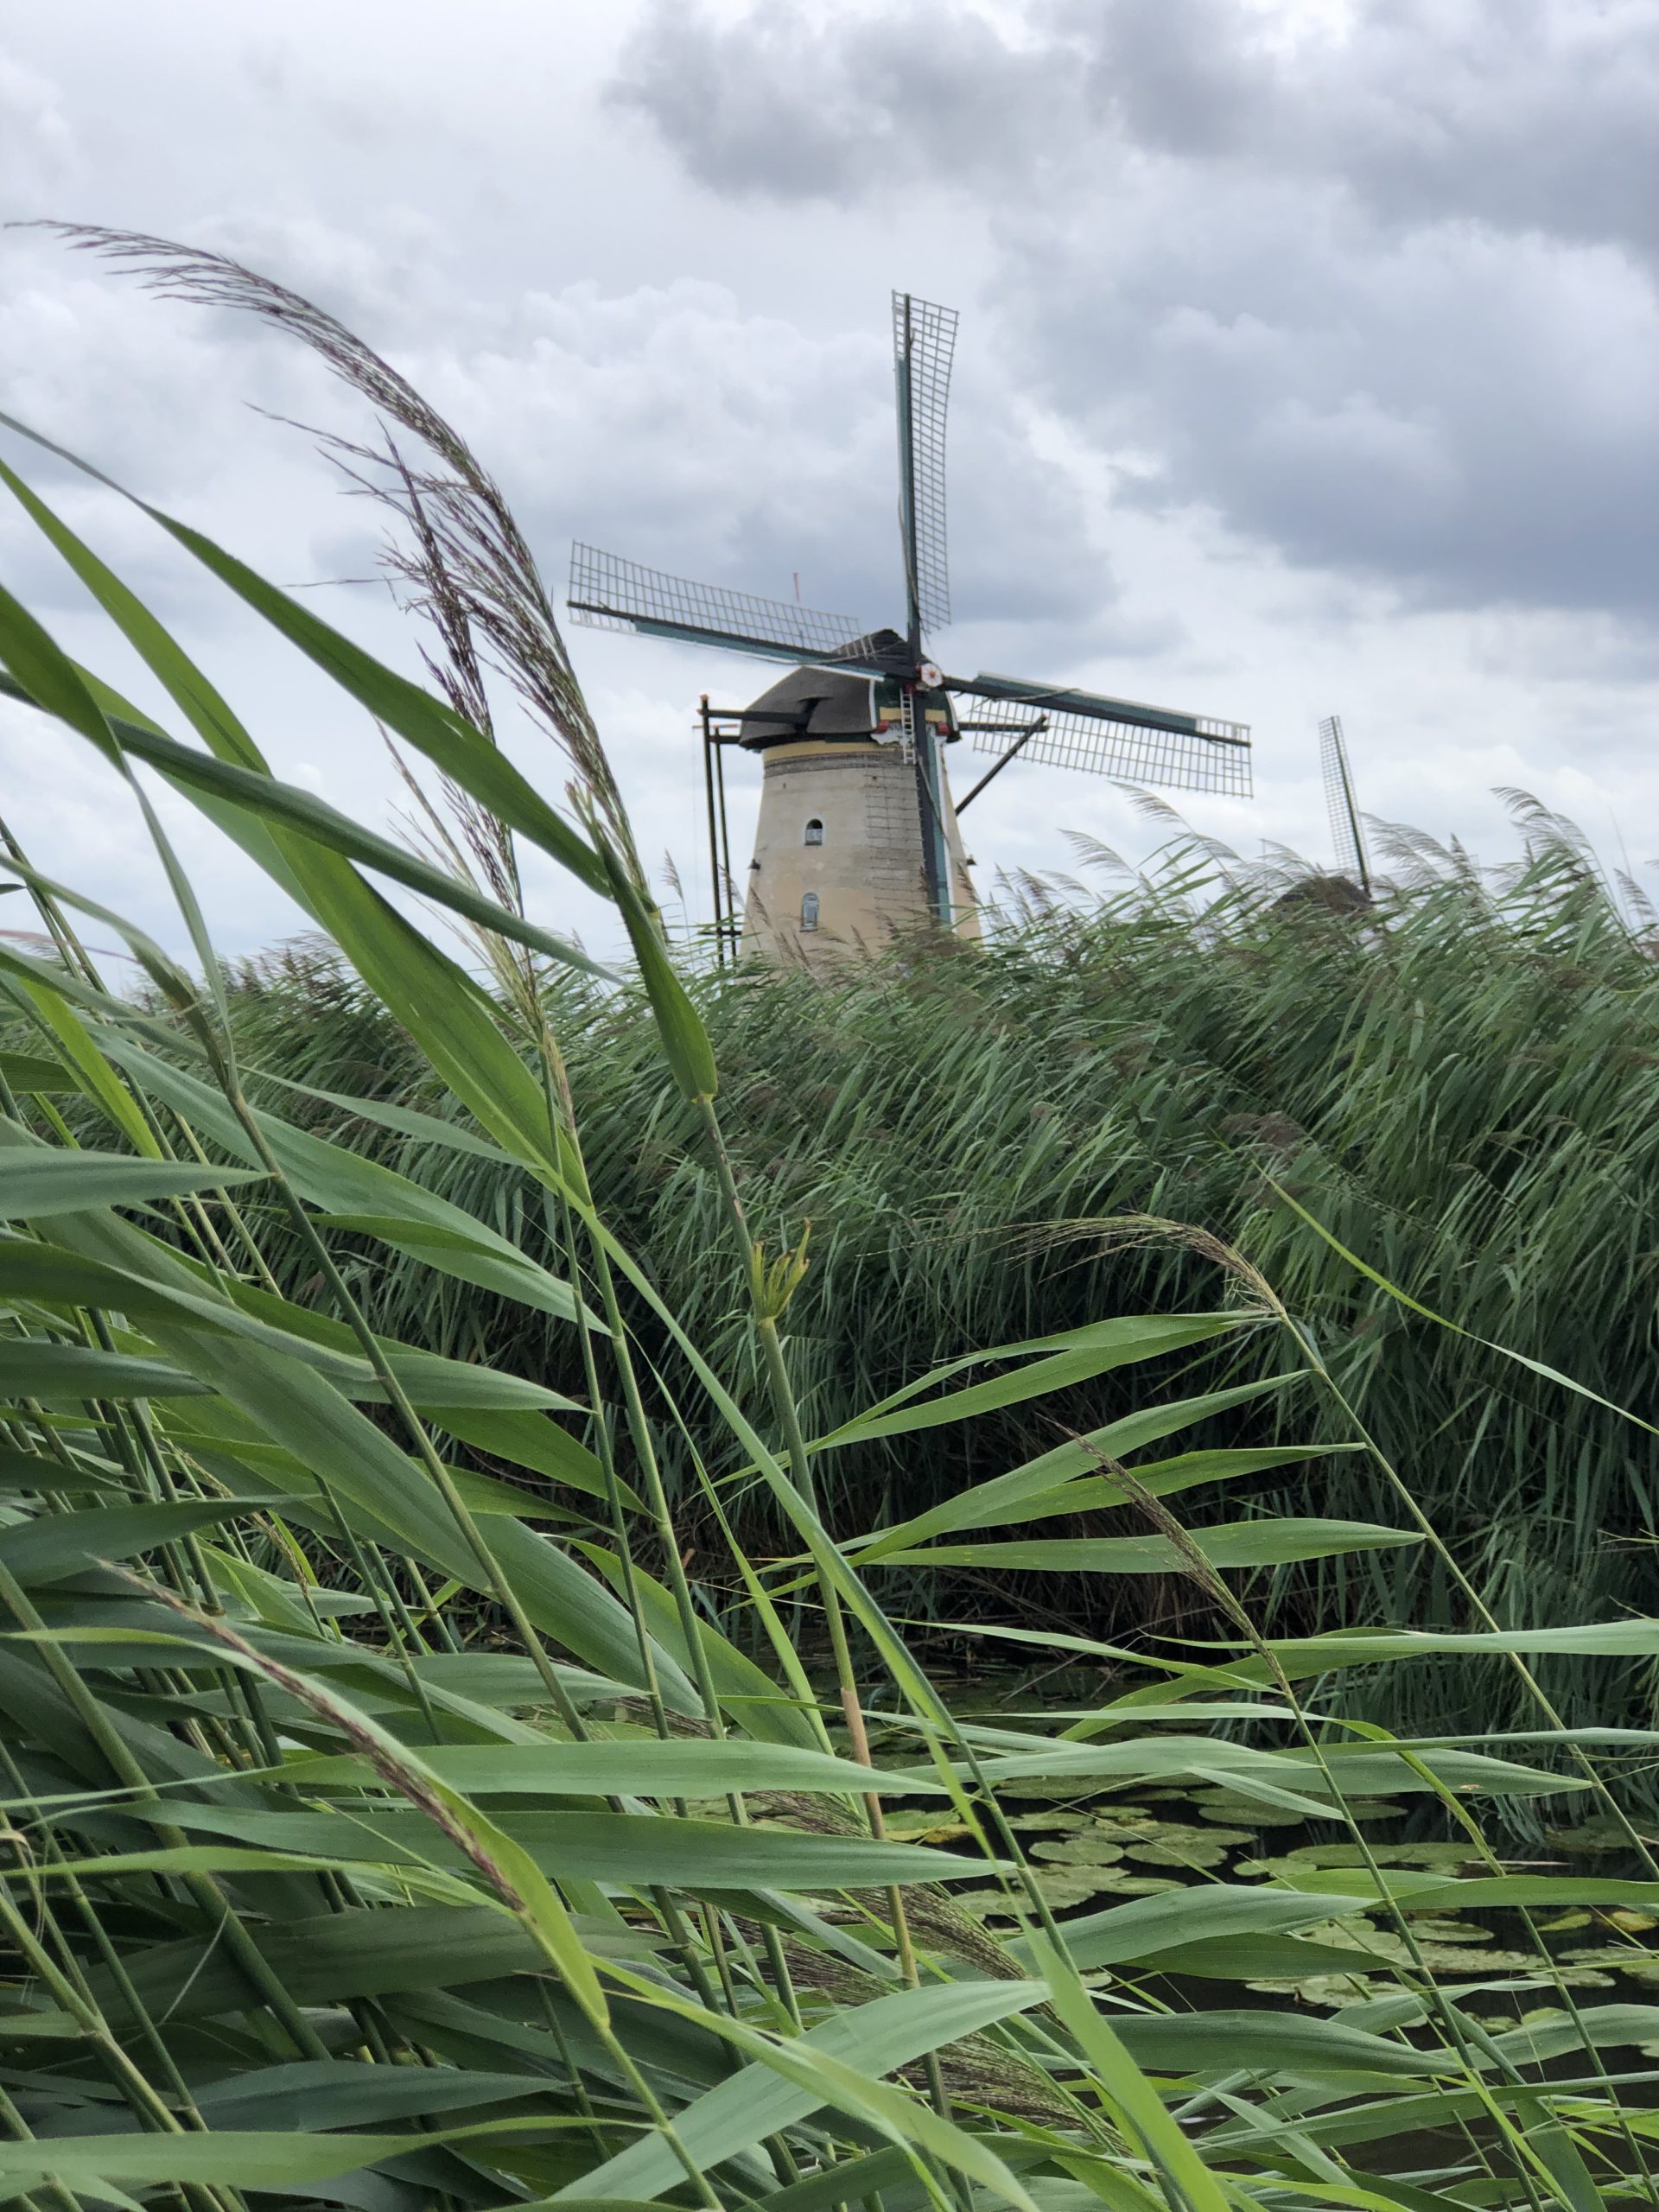 Road trip aux Pays-Bas: Delft, Gouda et Kinderdijk